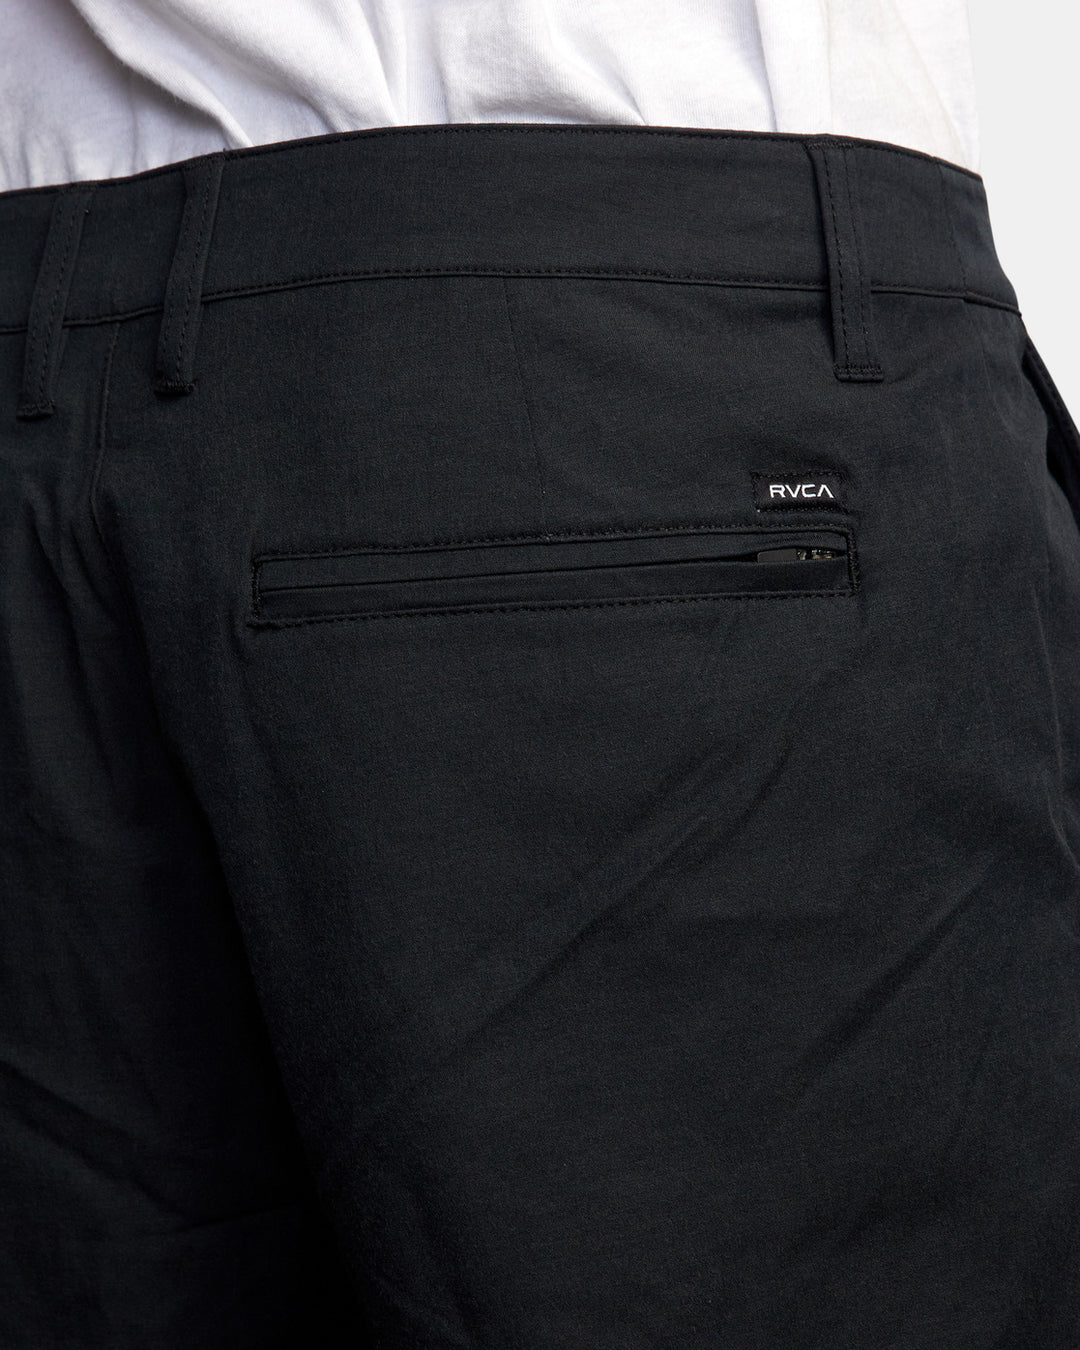 RVCA Back In Hybrid 19" Shorts - Black - Sun Diego Boardshop